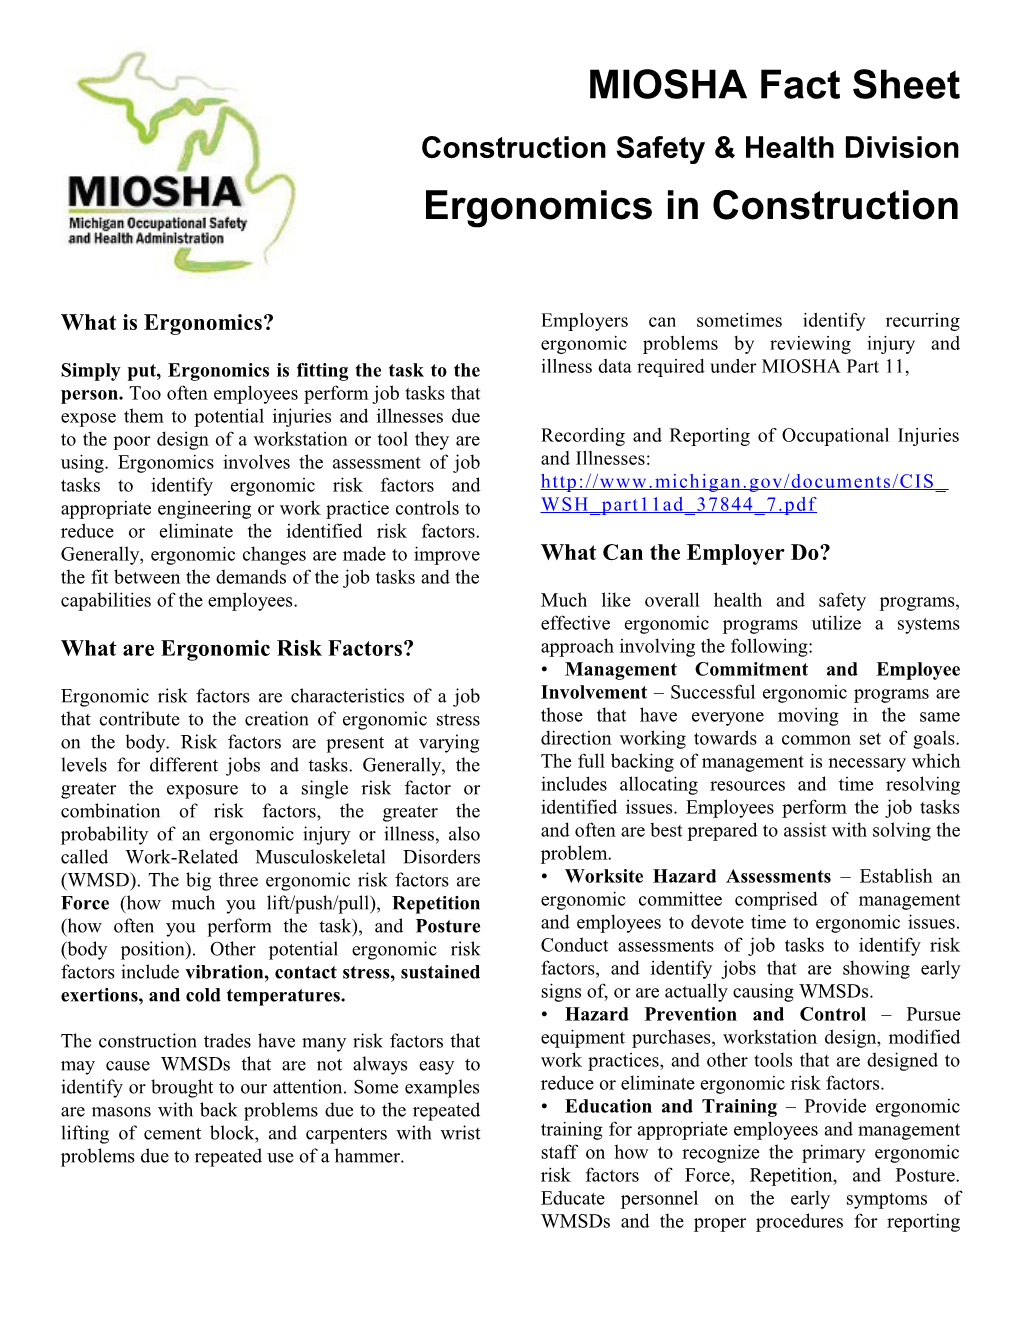 Ergonomics in Construction